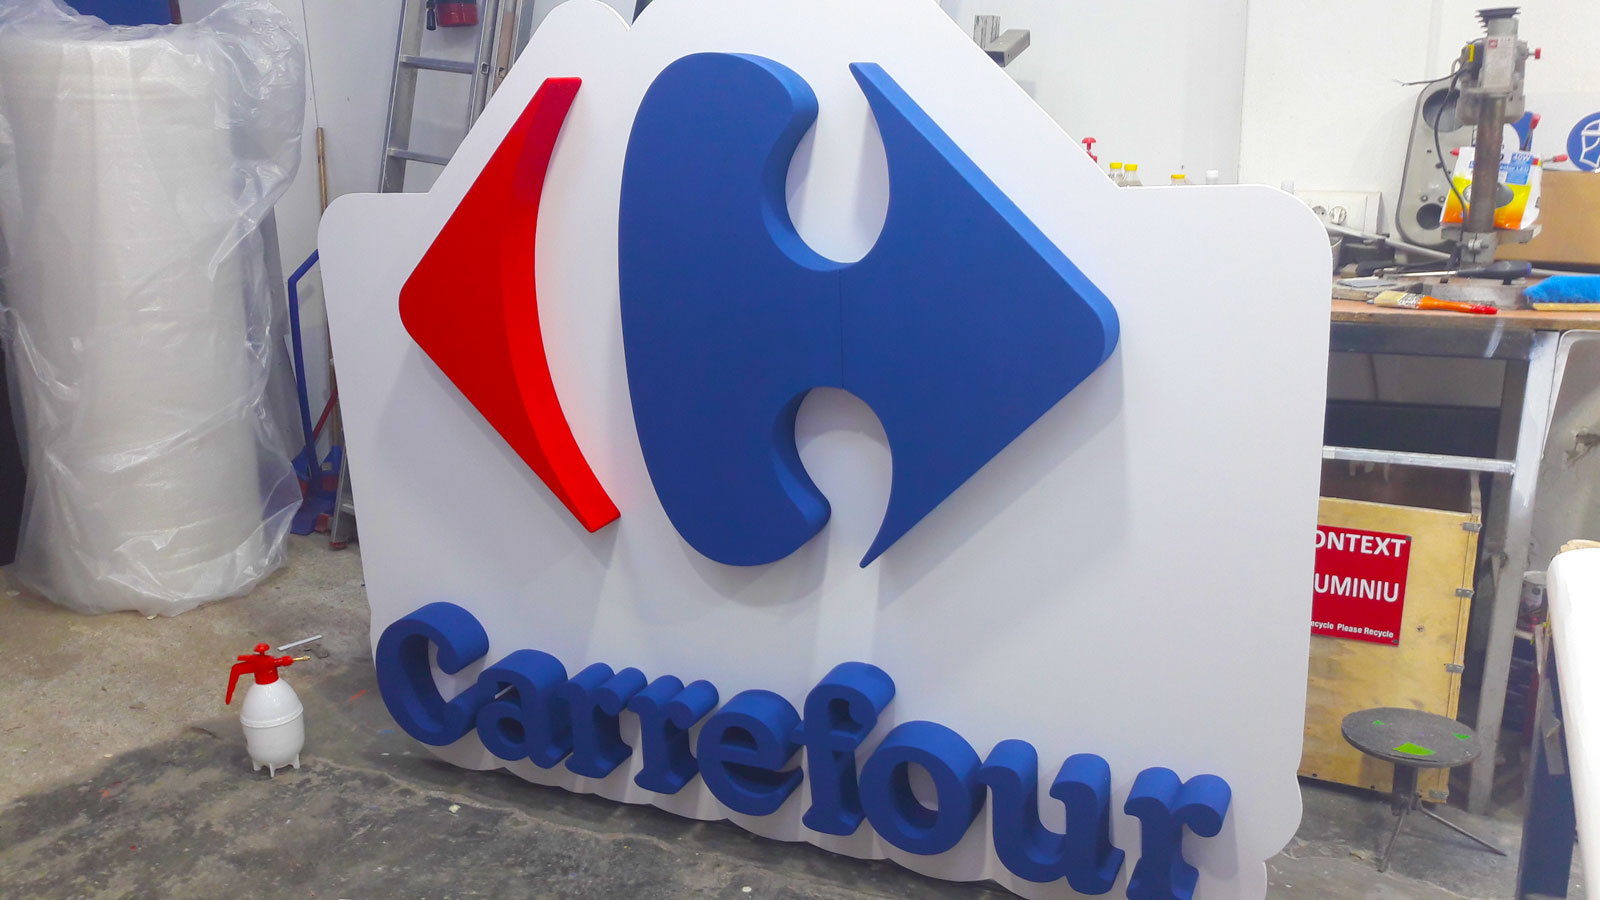 Litere volumetrice cu sigla Carrefour montate pe un panou alb